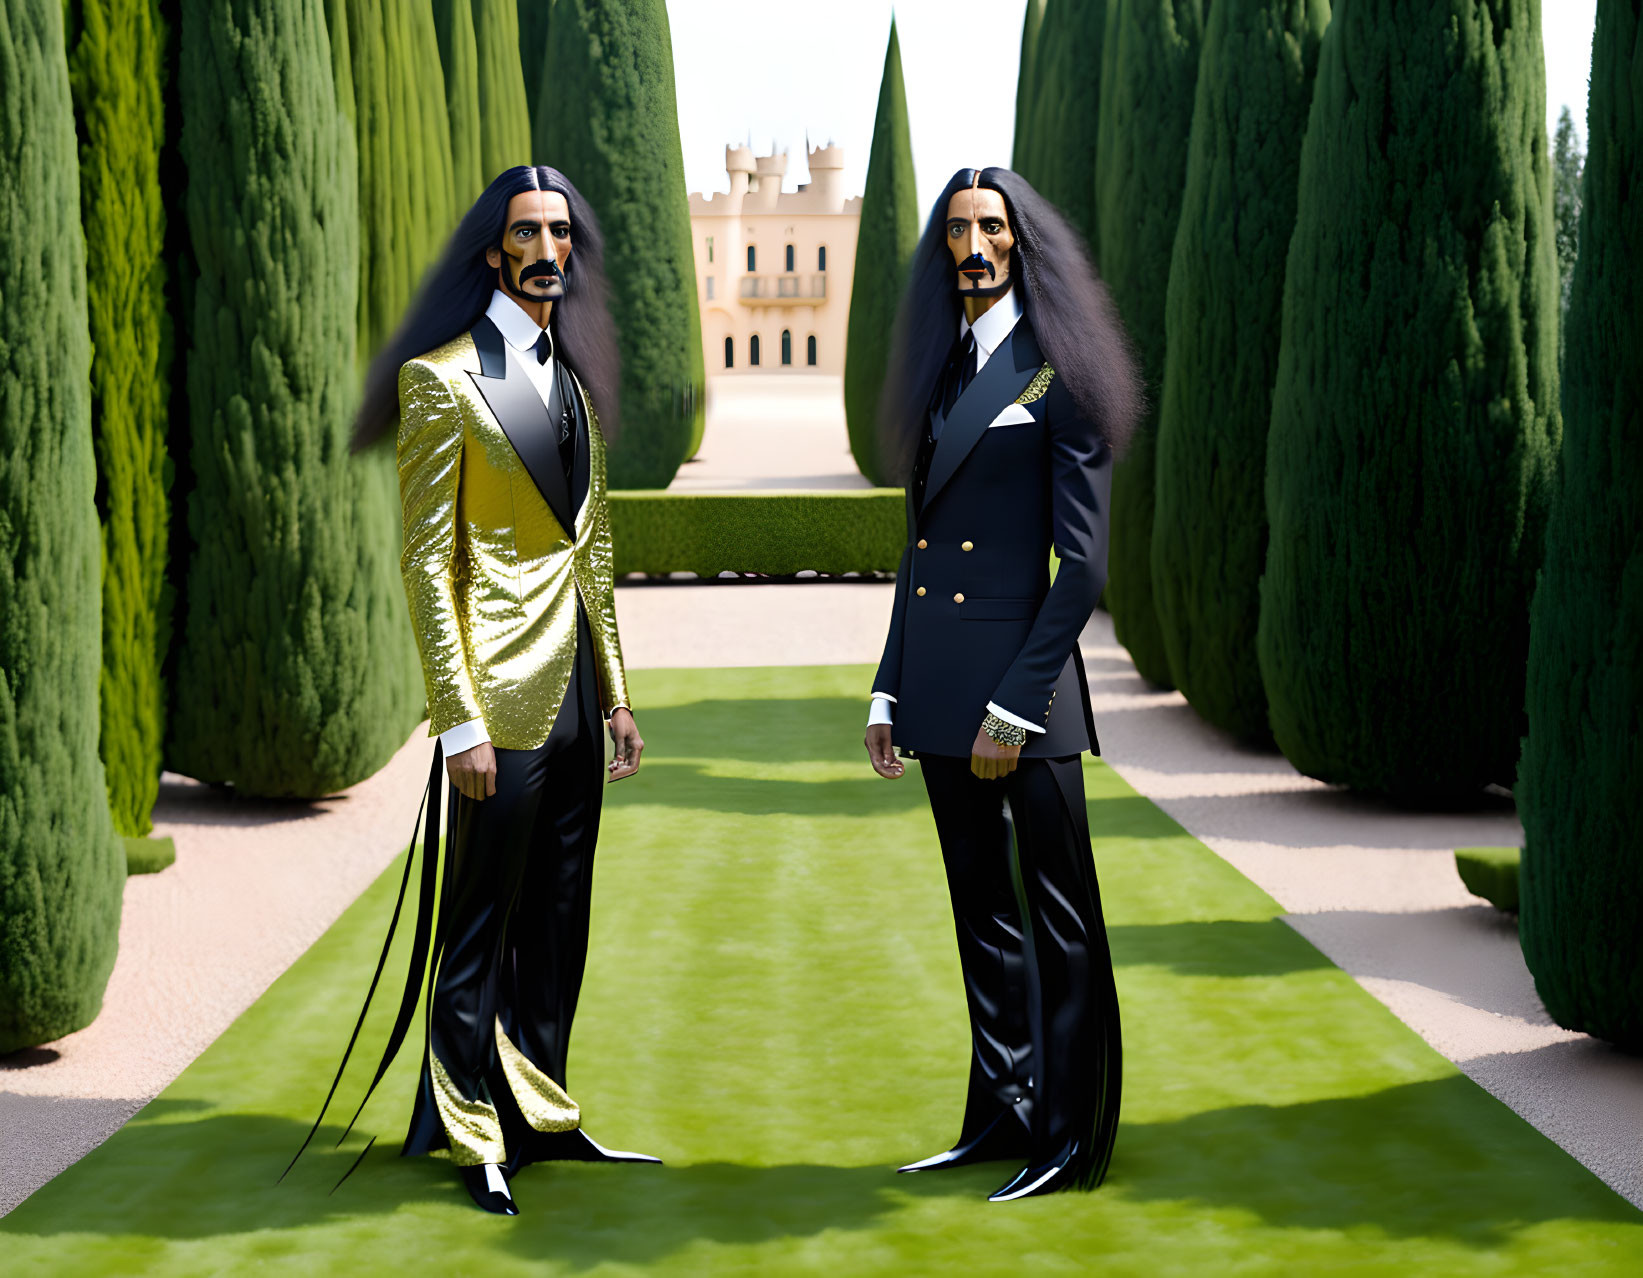 The Dali Twins in Dalis Garden 3